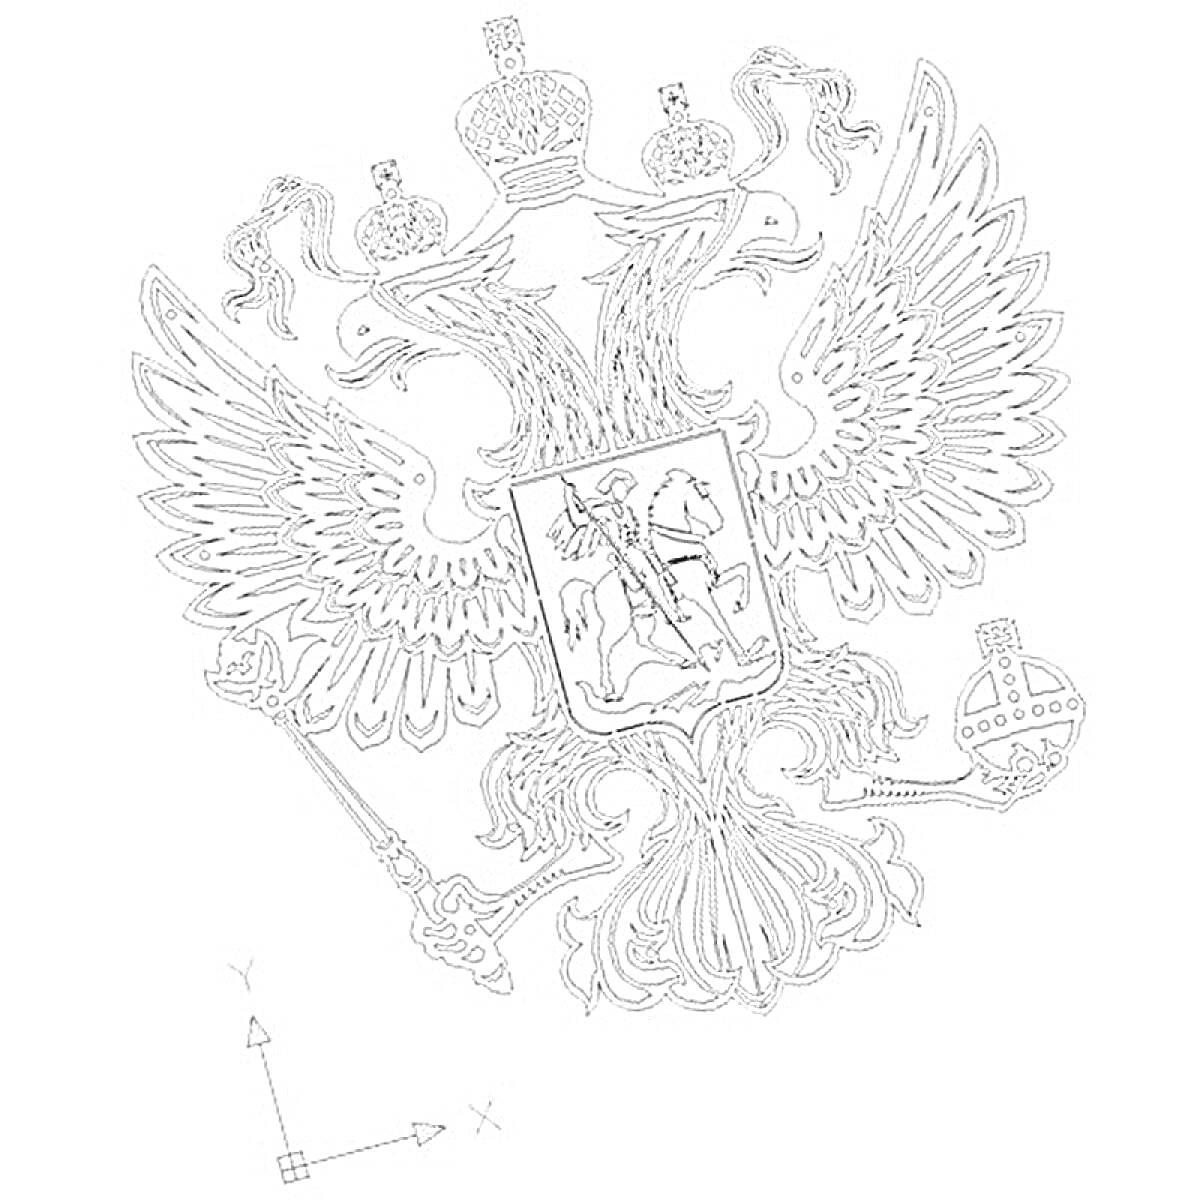 Герб России с двуглавым орлом, царскими коронами, скипетром и державой, изображением Георгия Победоносца на щите